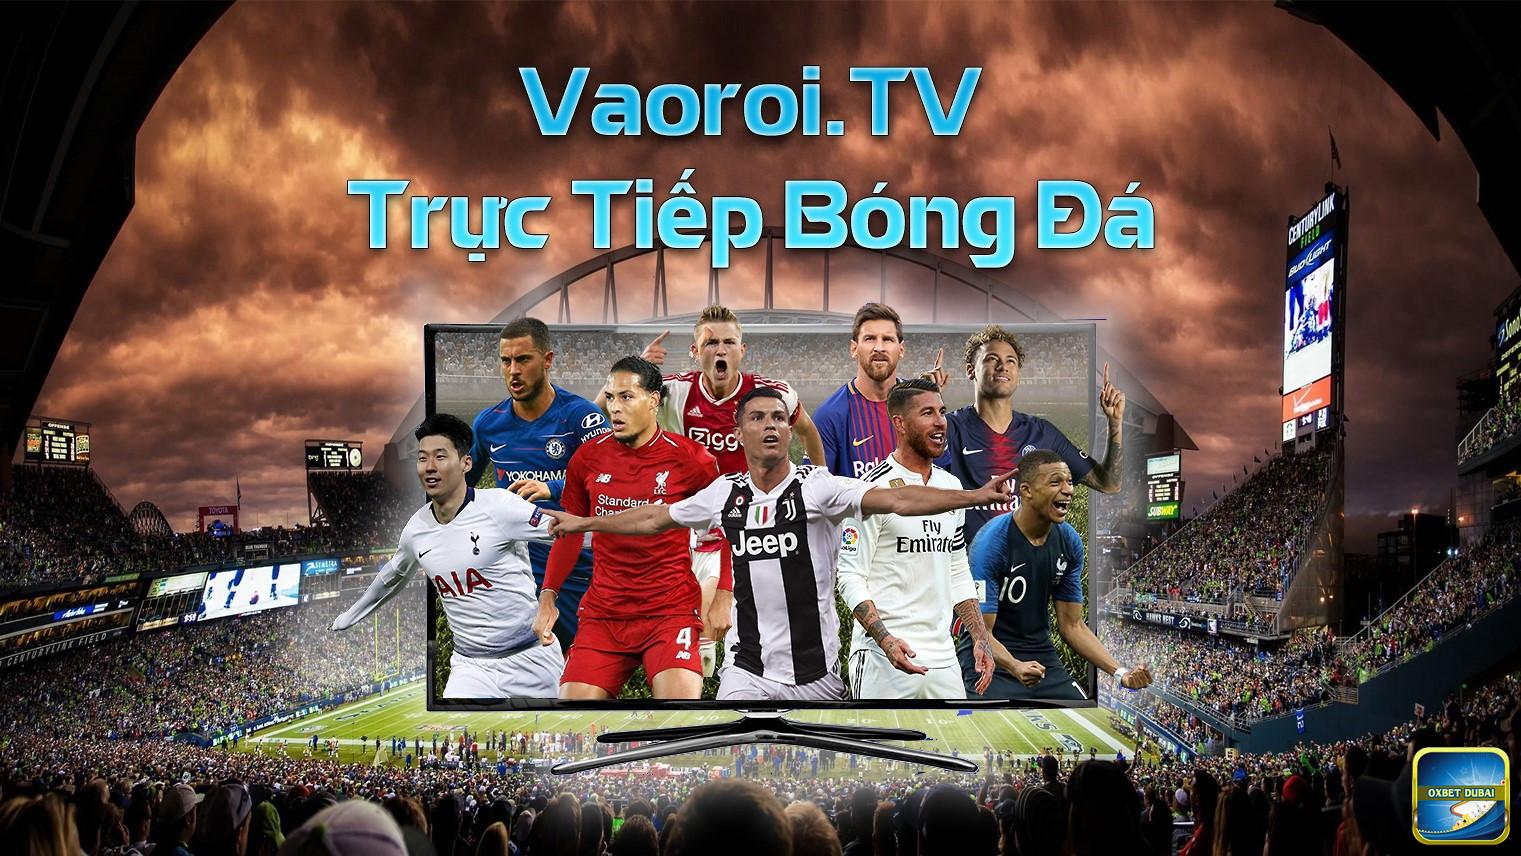 Vaoroi TV trực tiếp bóng đá với chất lượng cao hàng đầu